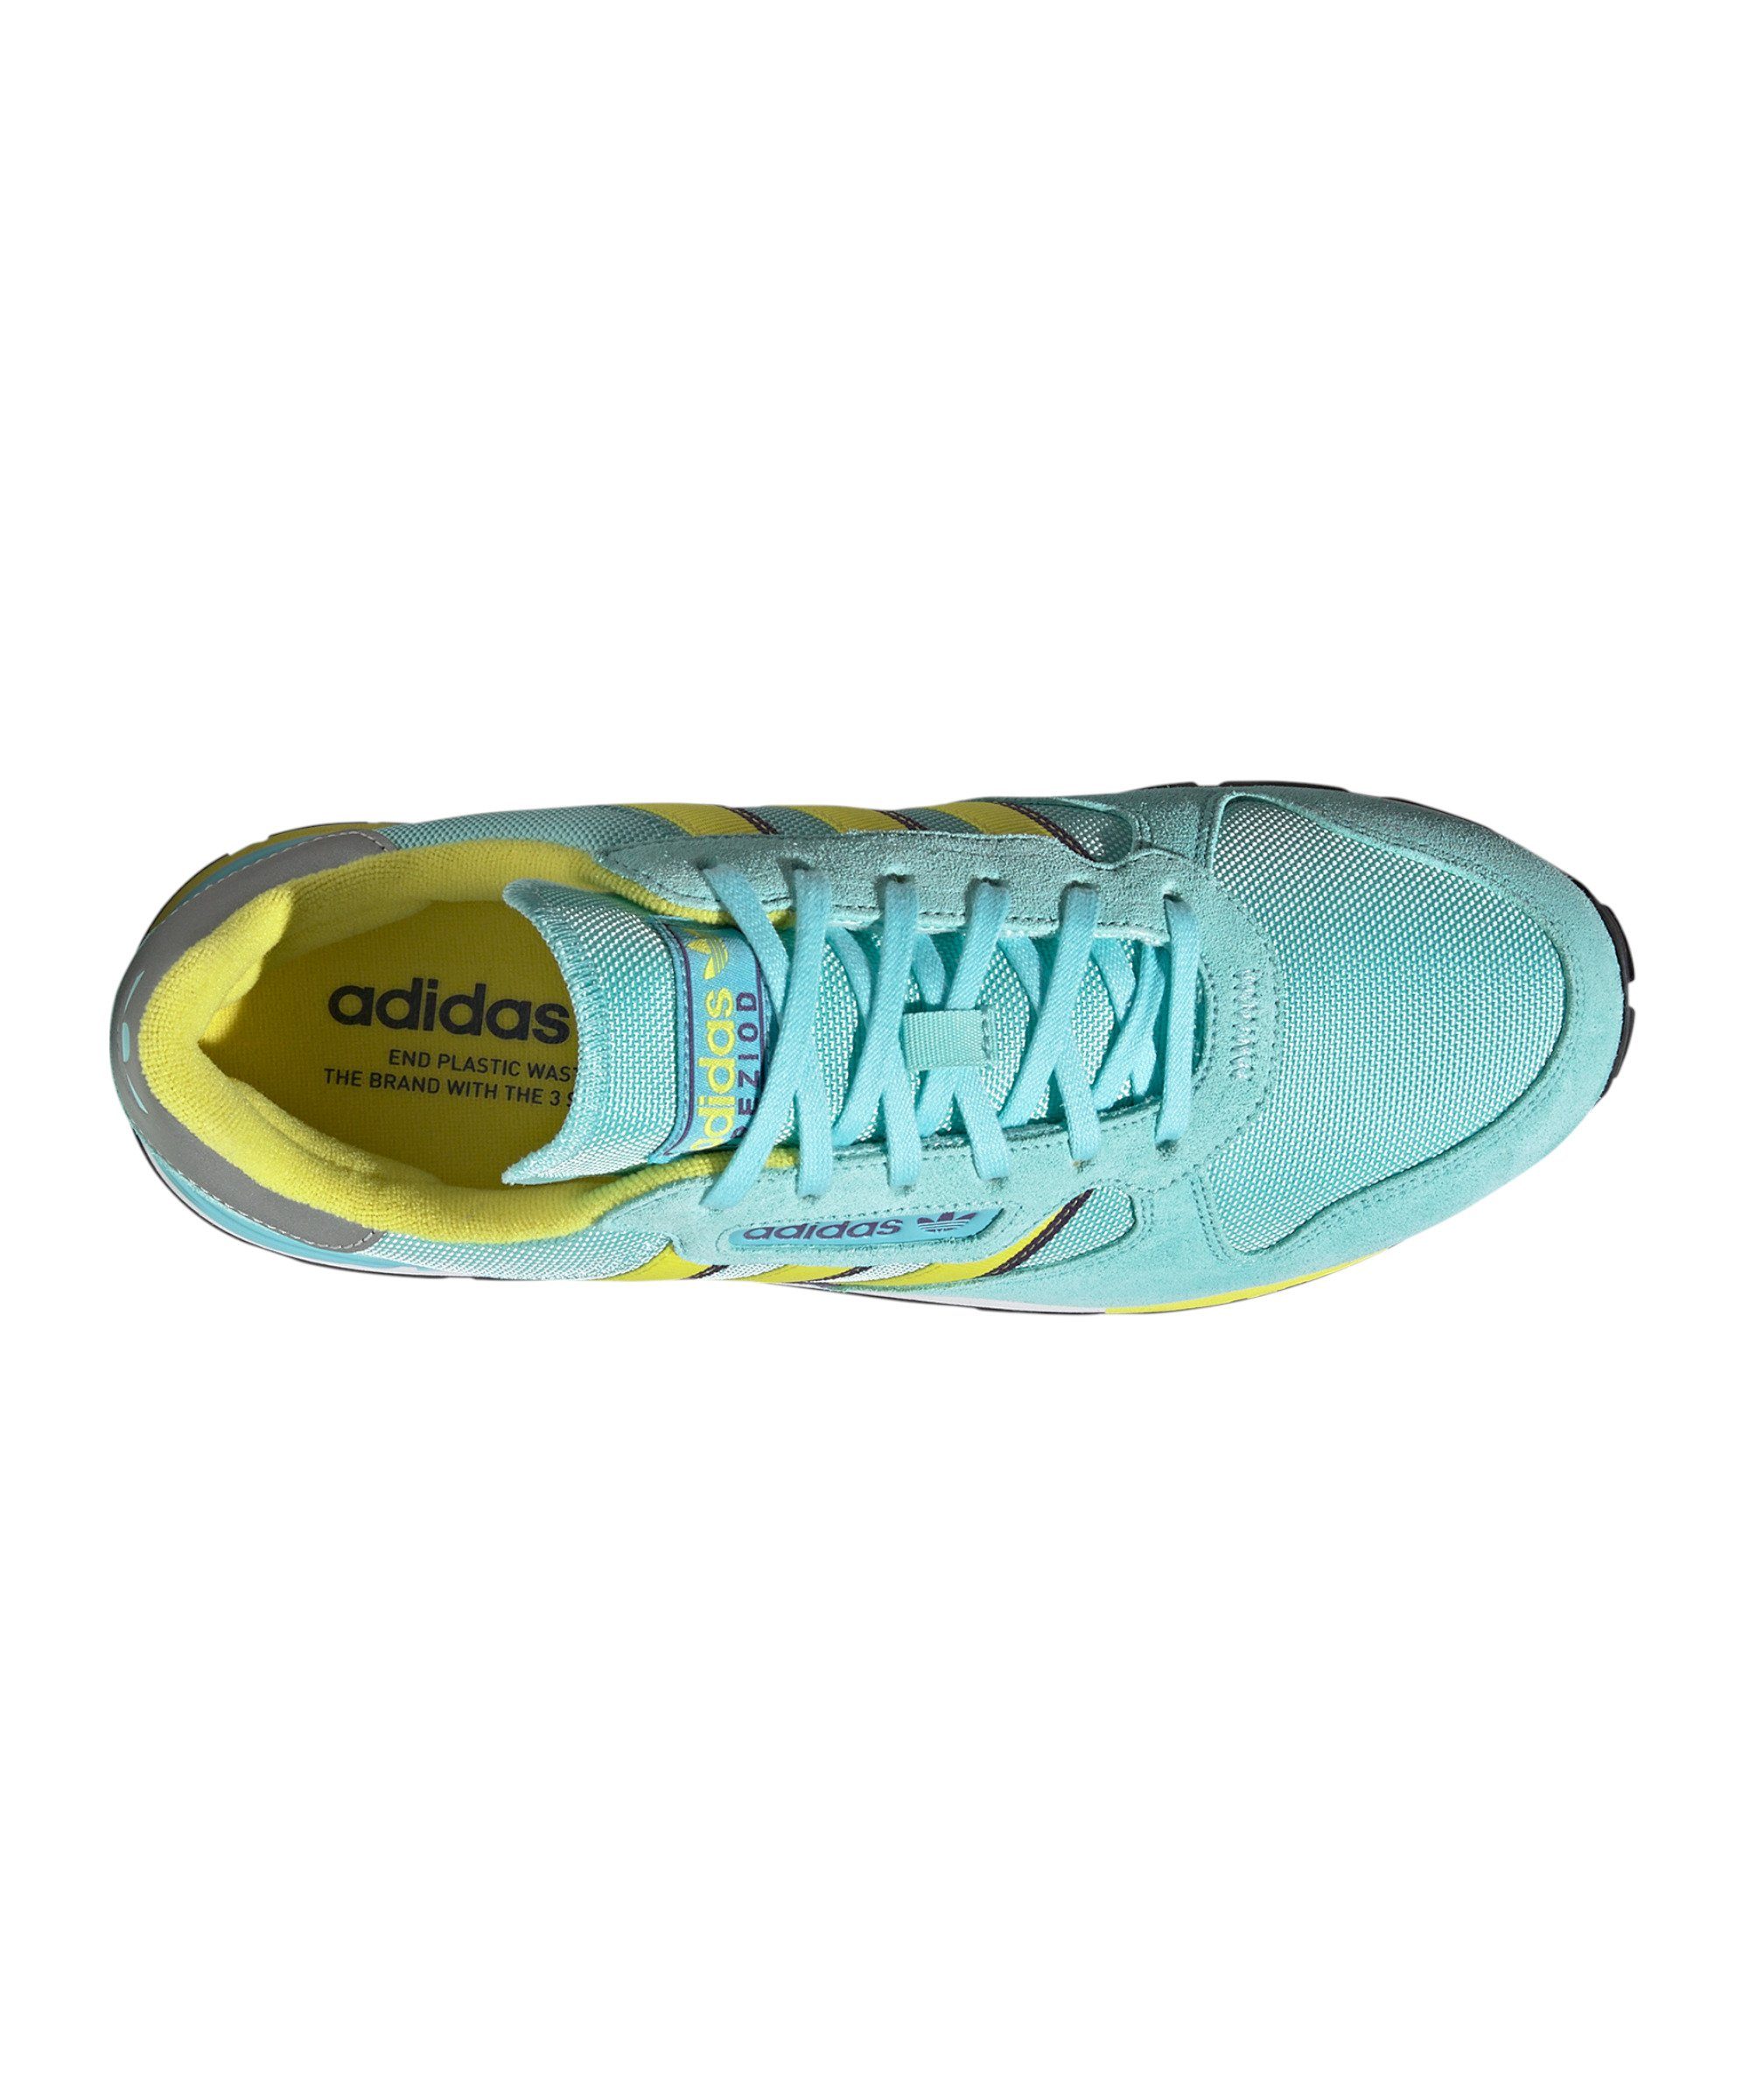 Treziod Originals 2 adidas blaugelblila Sneaker